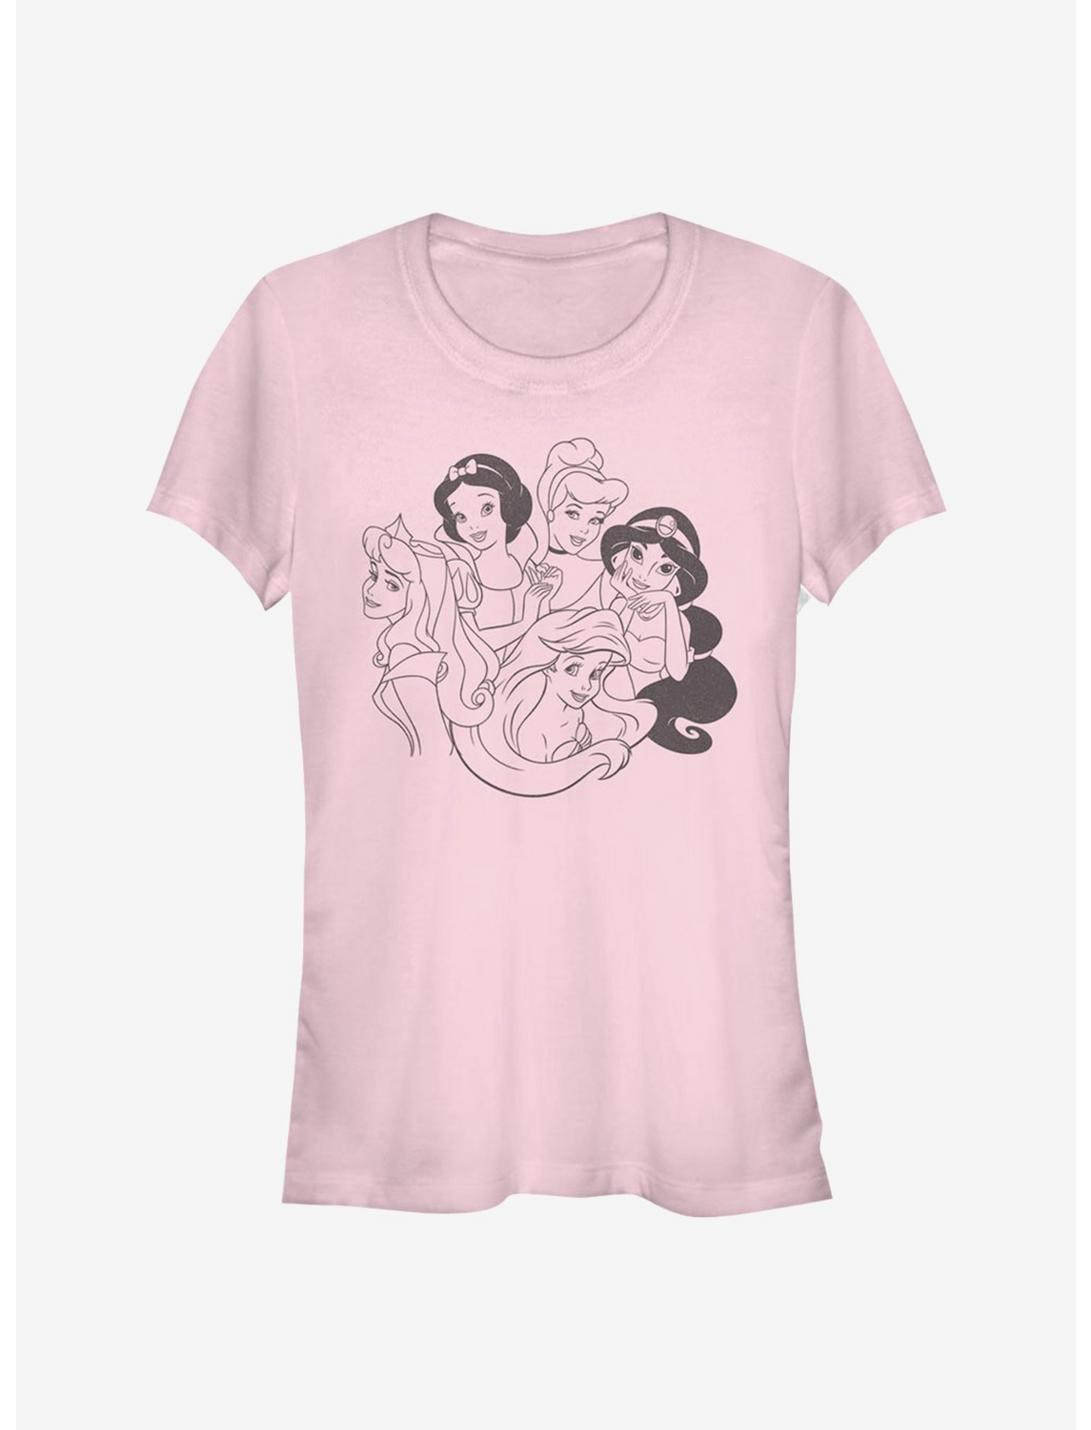 Disney Princess Simple Princess Girls T-Shirt - PINK | Hot Topic